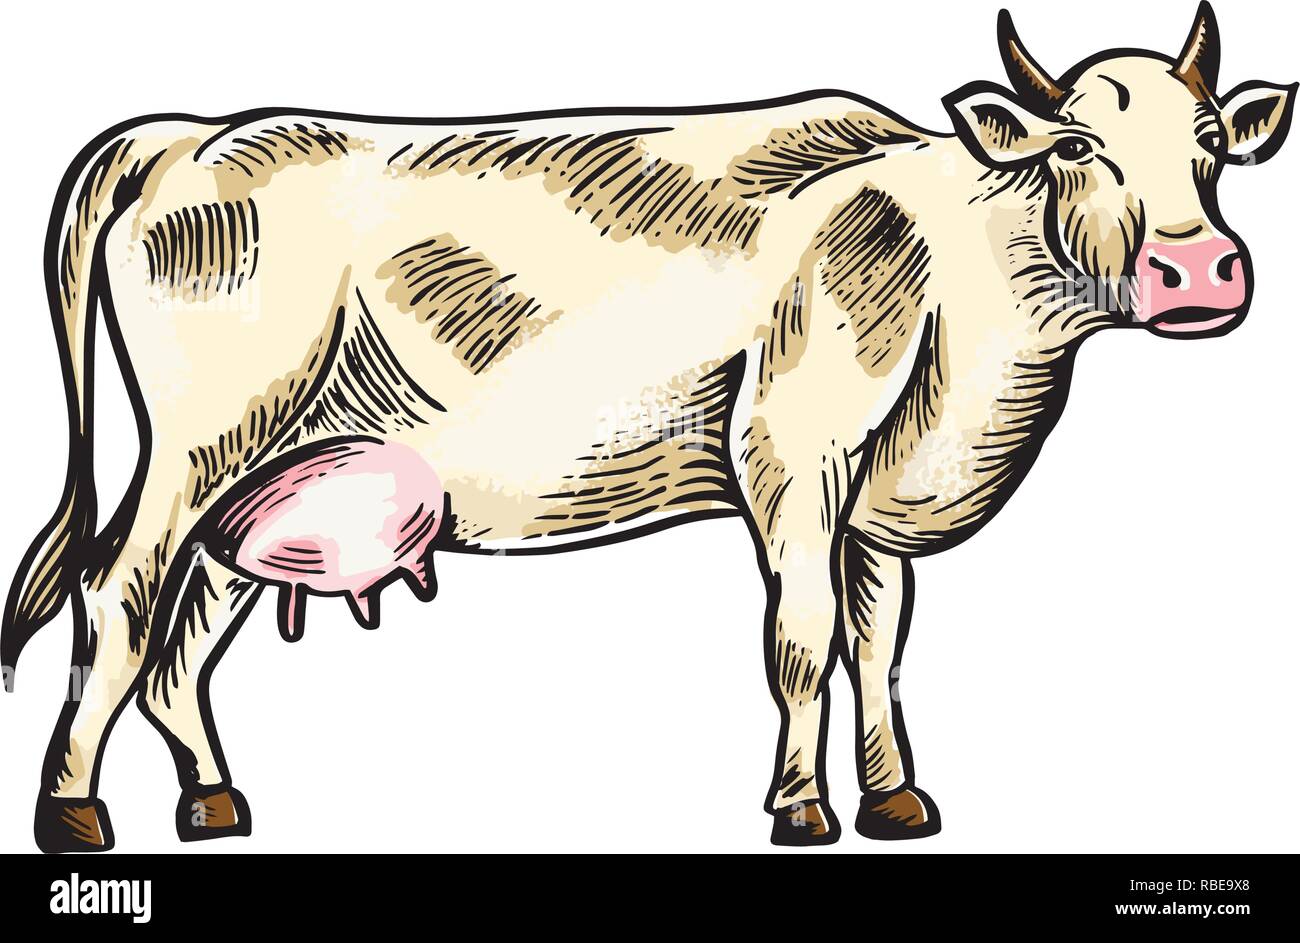 Schizzo di mucca disegnato a mano. Bestiame. I capi di bestiame. Il pascolo degli animali. Illustrazione Vettoriale come incisione. Illustrazione Vettoriale